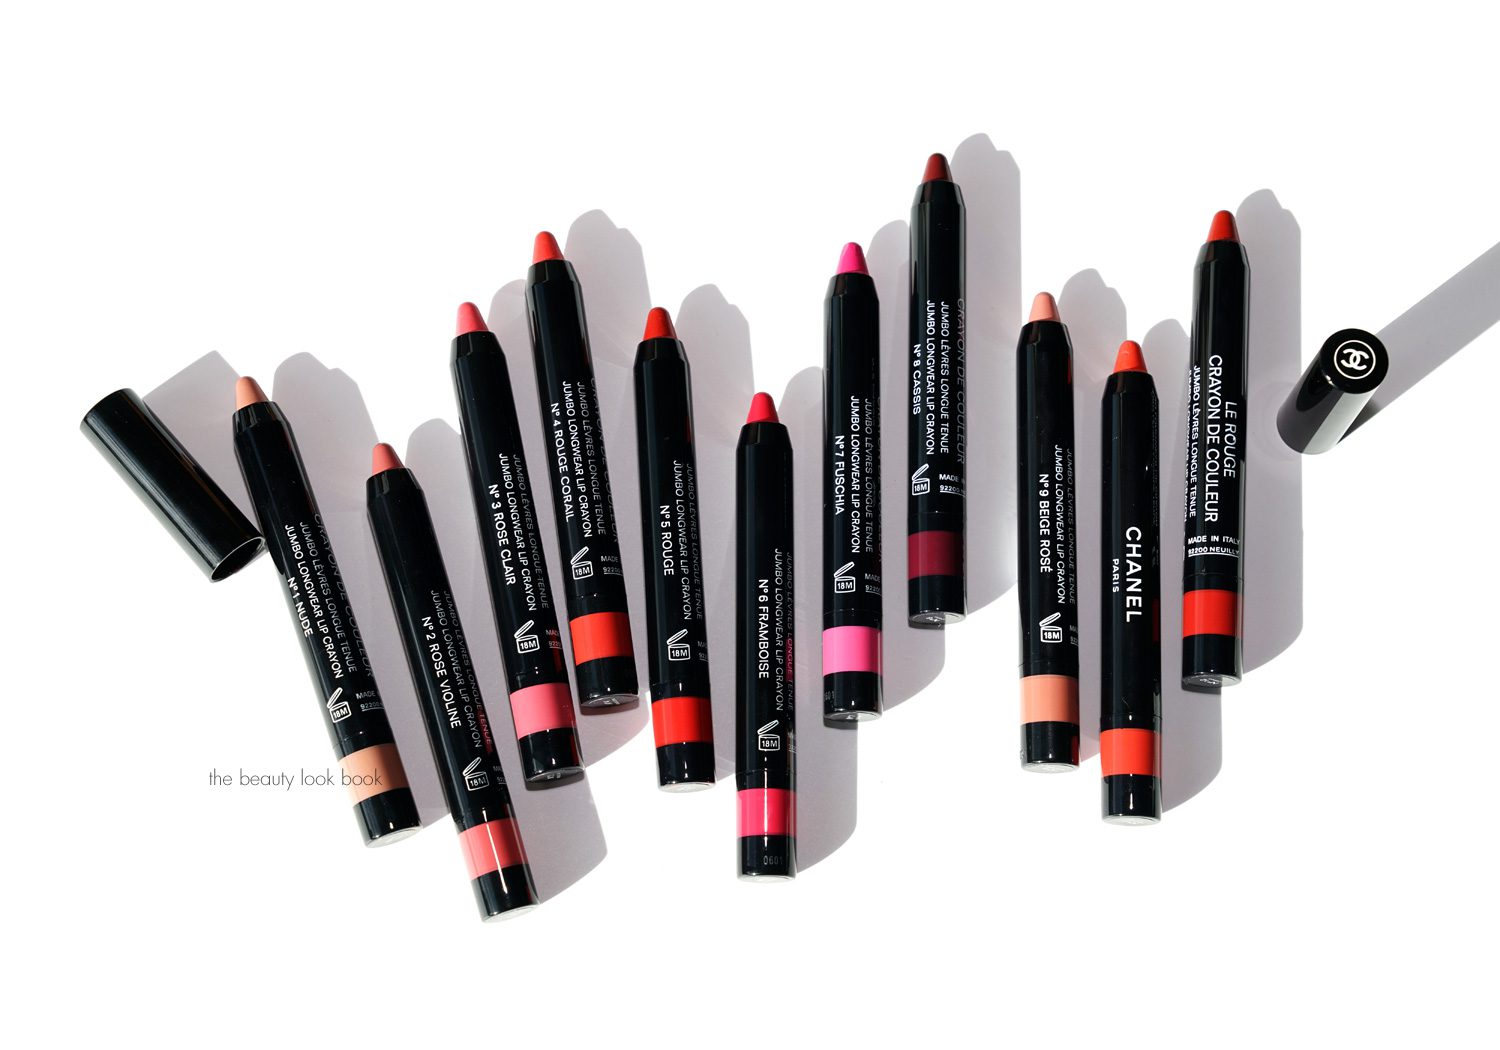 Chanel Le Rouge Crayon De Couleur Longwear Lip Crayon N.5 Rouge New Box